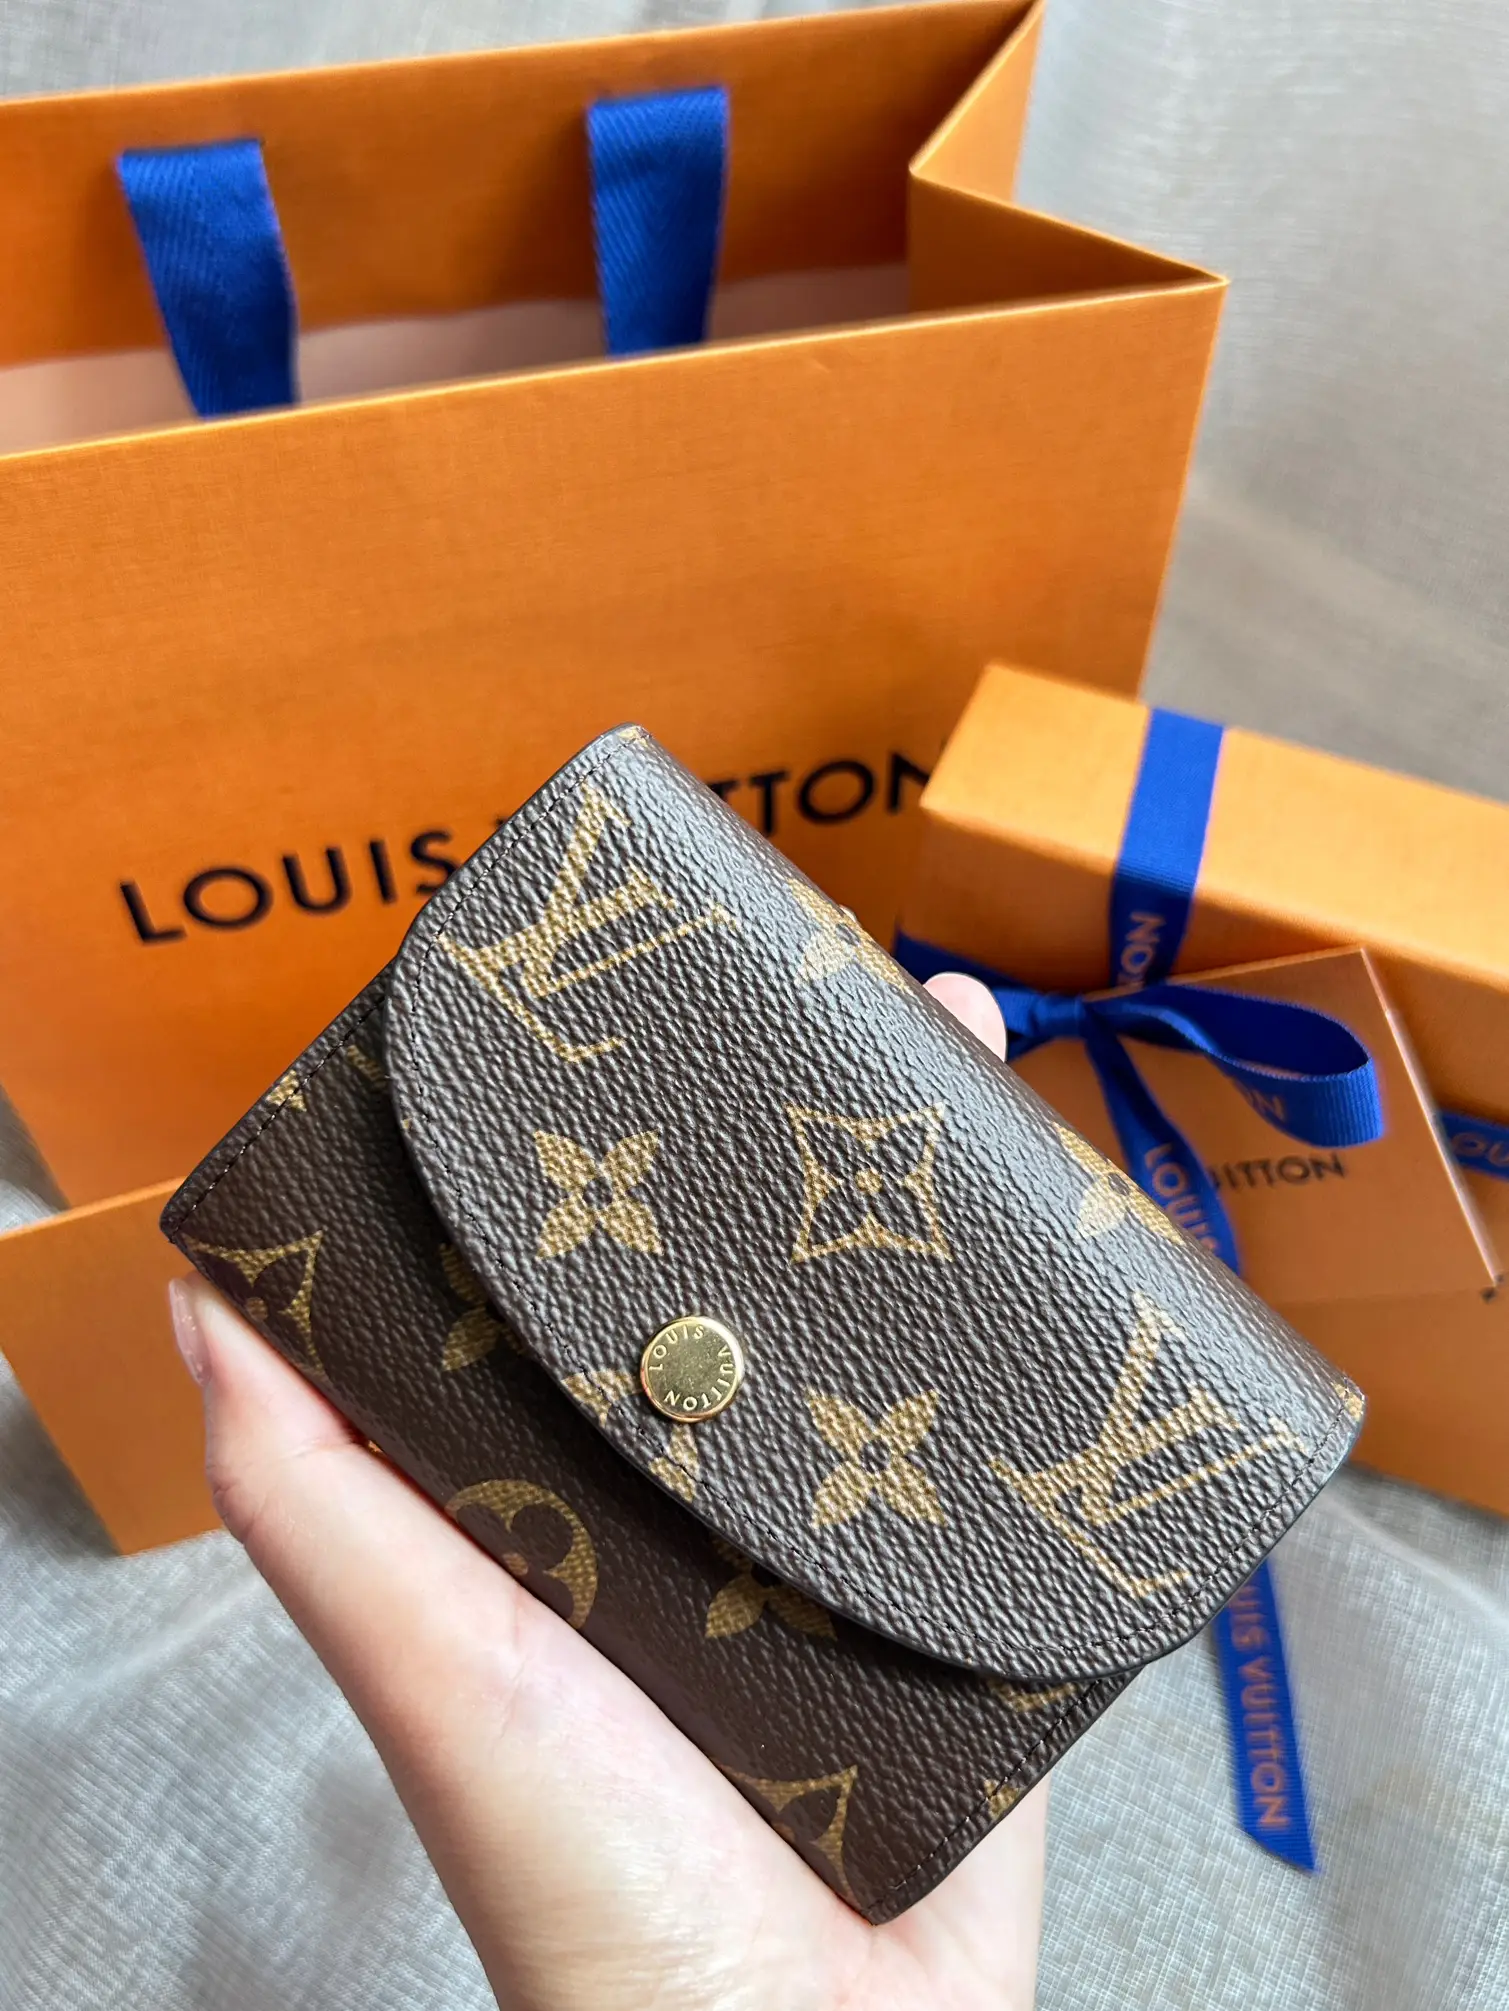 Shop Louis Vuitton Rosalie coin purse (M62361, M41939) by